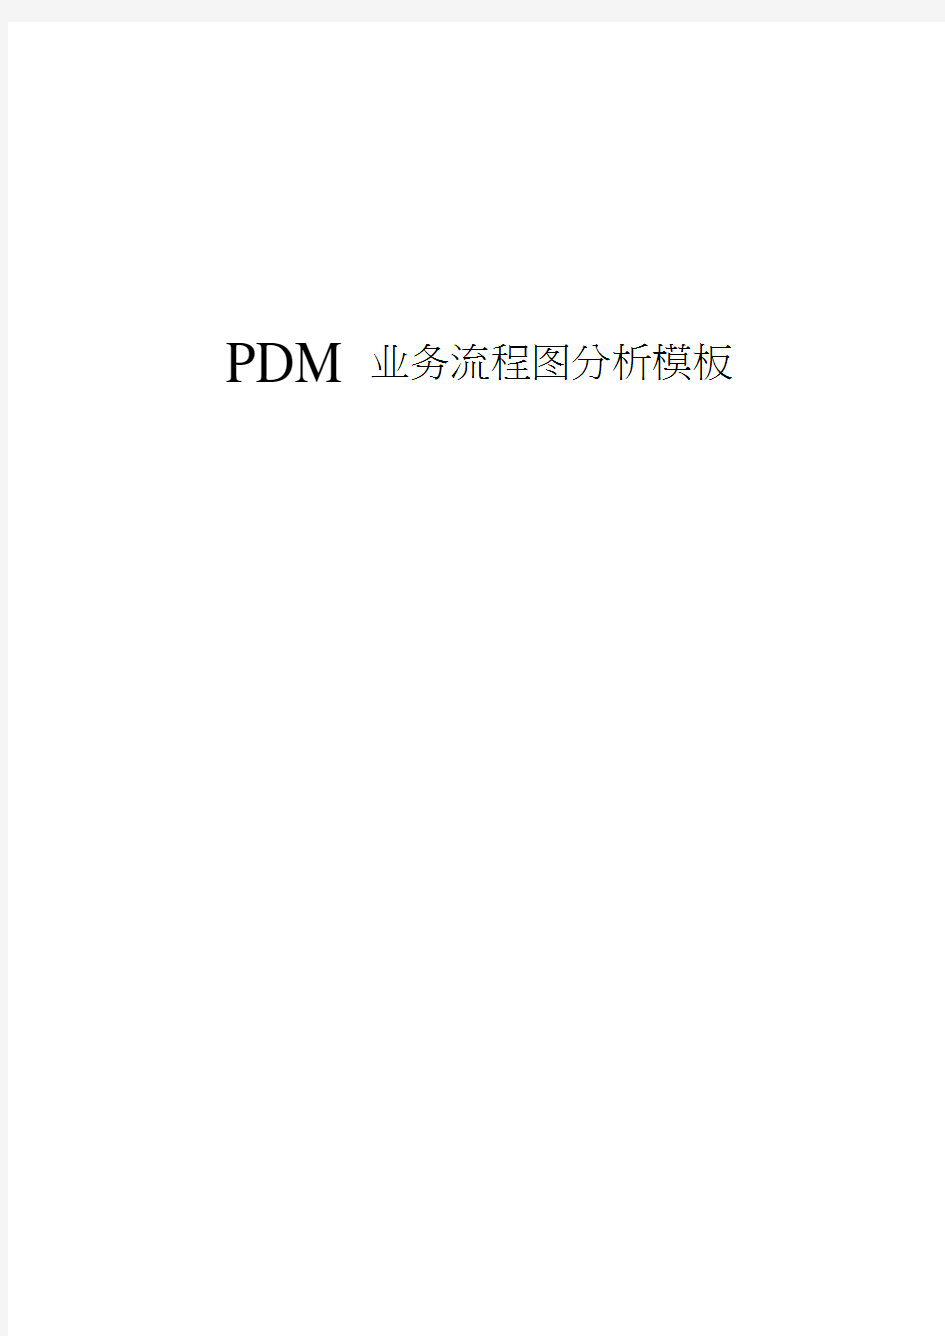 PDM业务流程图分析模板